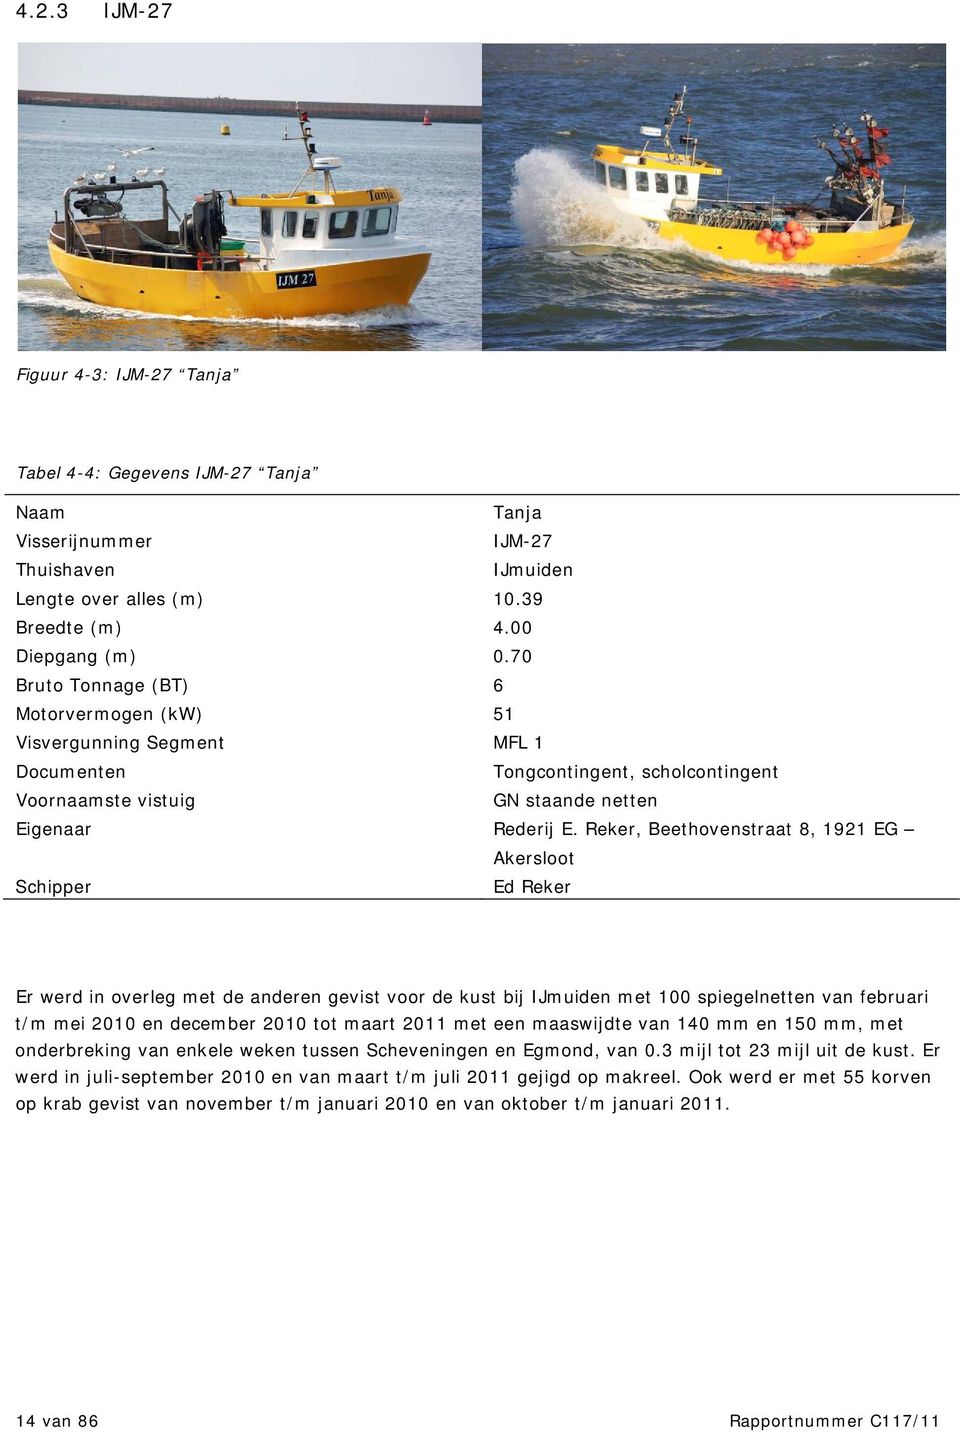 Schipper Ed Reker Er werd in overleg met de anderen gevist voor de kust bij IJmuiden met 1 spiegelnetten van februari t/m mei 21 en december 21 tot maart 211 met een maaswijdte van 14 mm en 15 mm,